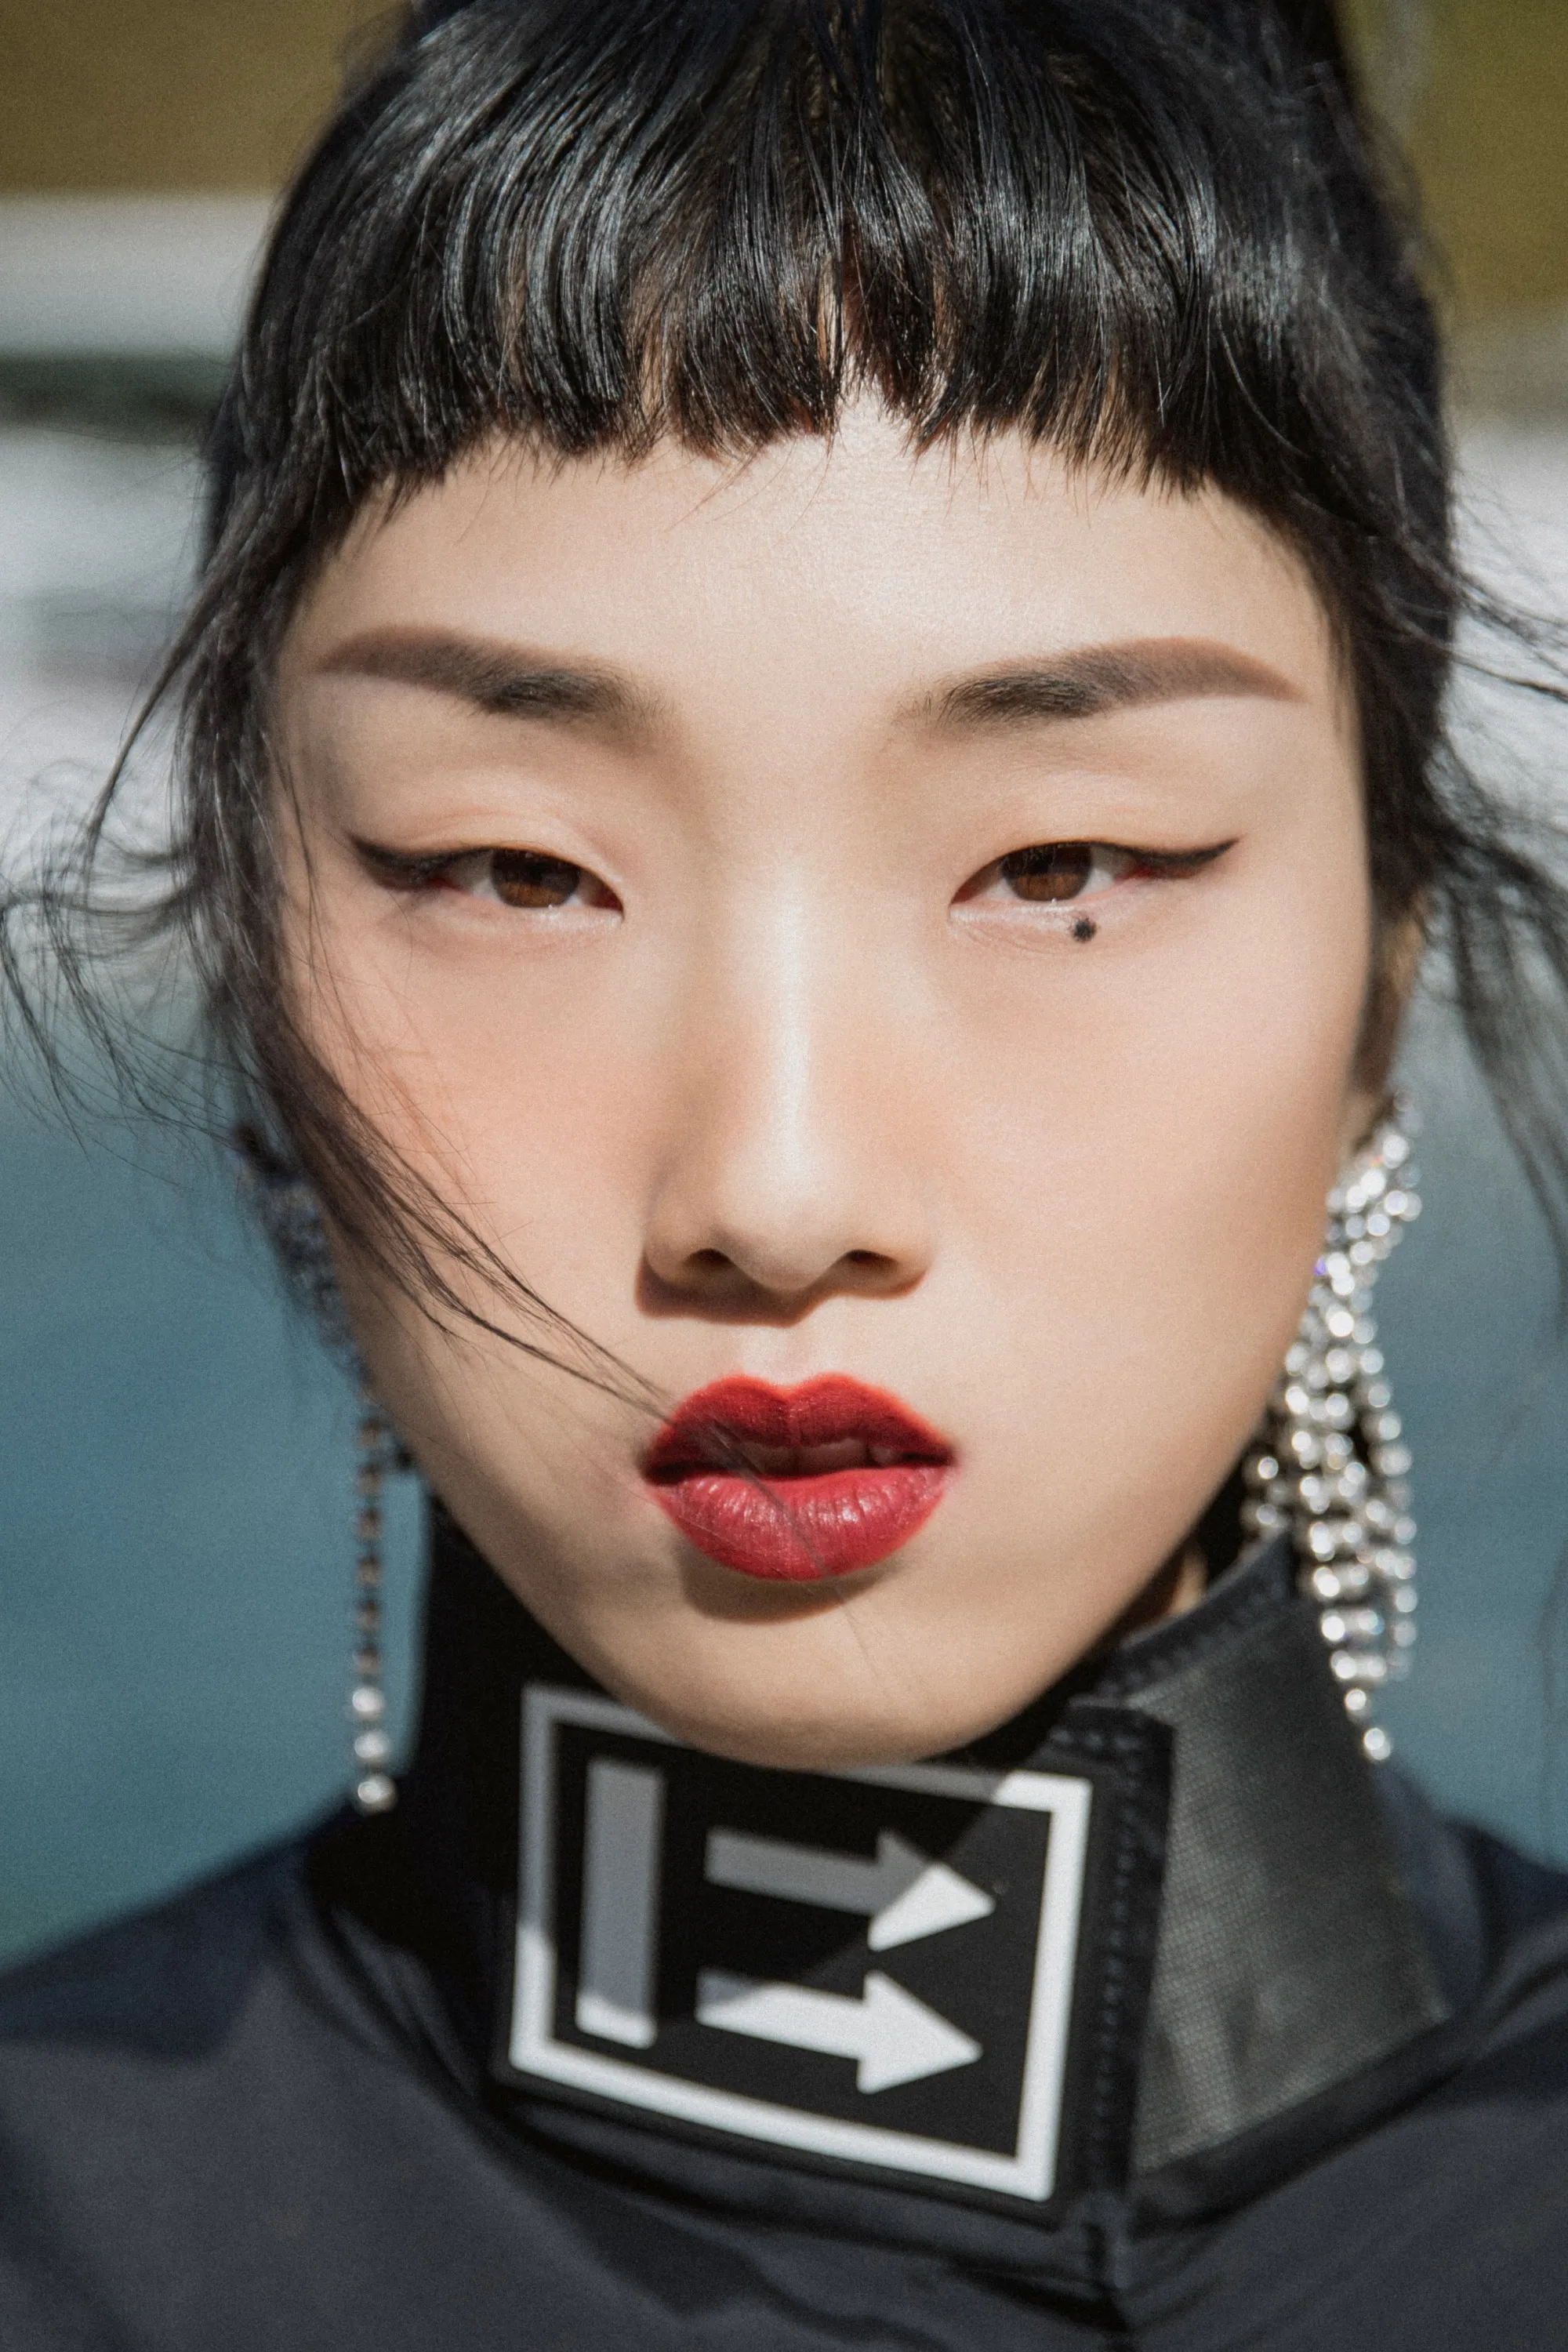 Wan yunfeng to create Paris fashion week for rocket girl 101yamy. JPG